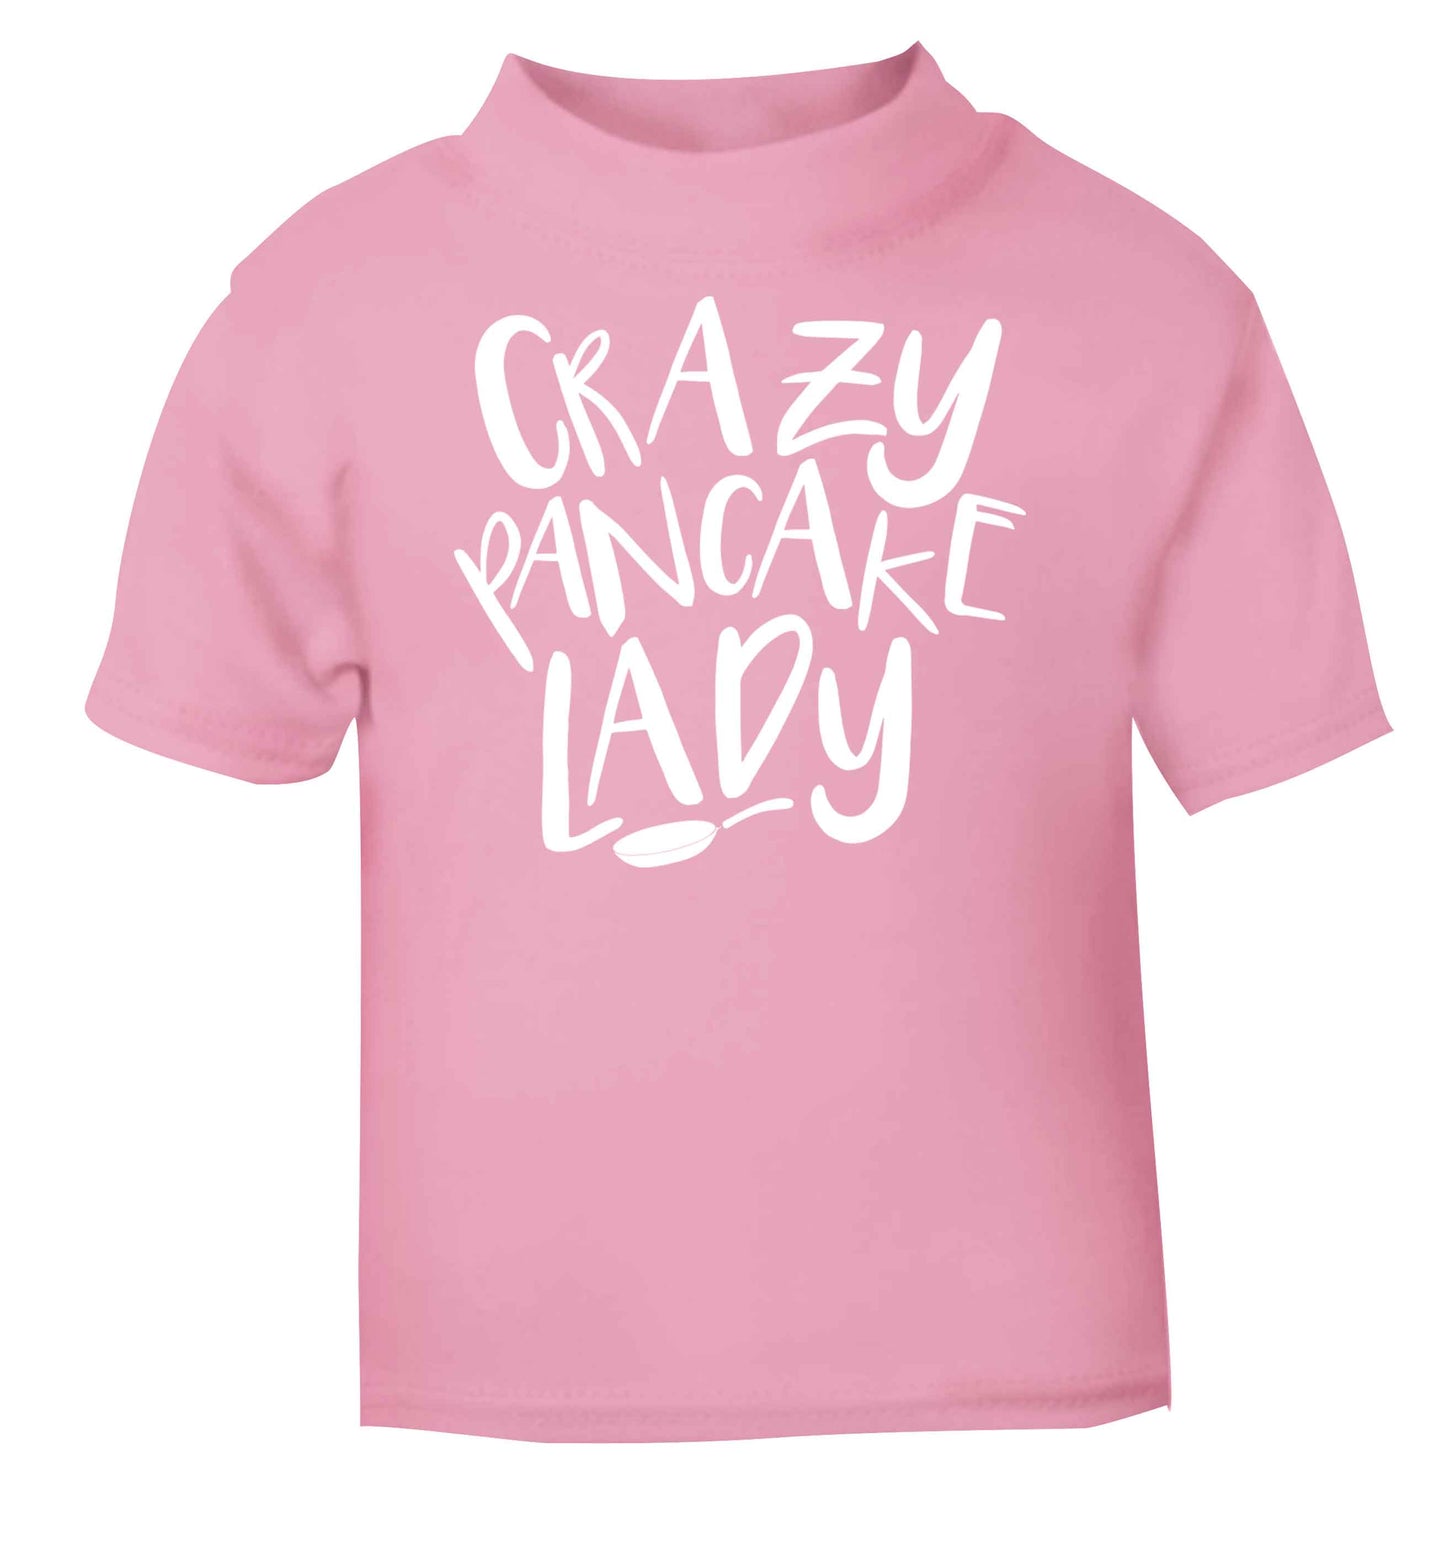 Crazy pancake lady light pink baby toddler Tshirt 2 Years